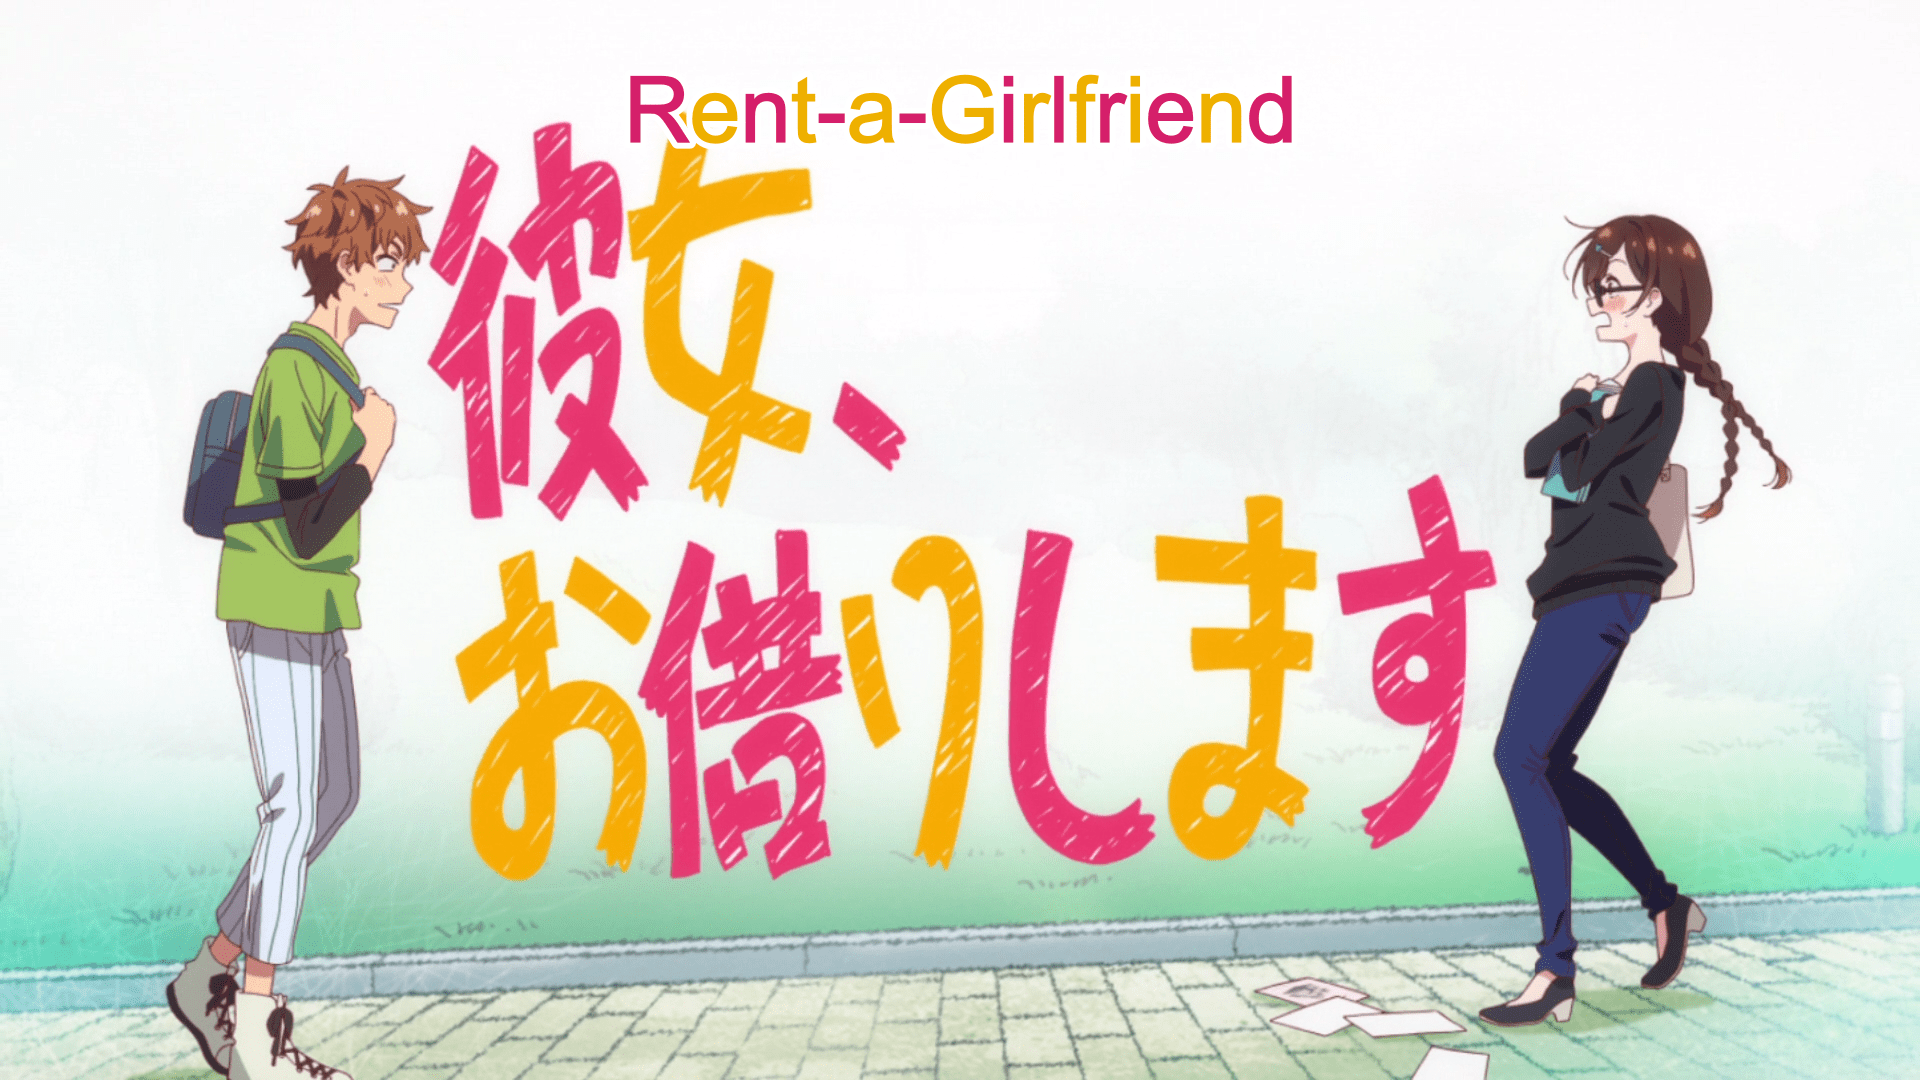 Rent A Girlfriend Wallpaper Free Rent A Girlfriend Background